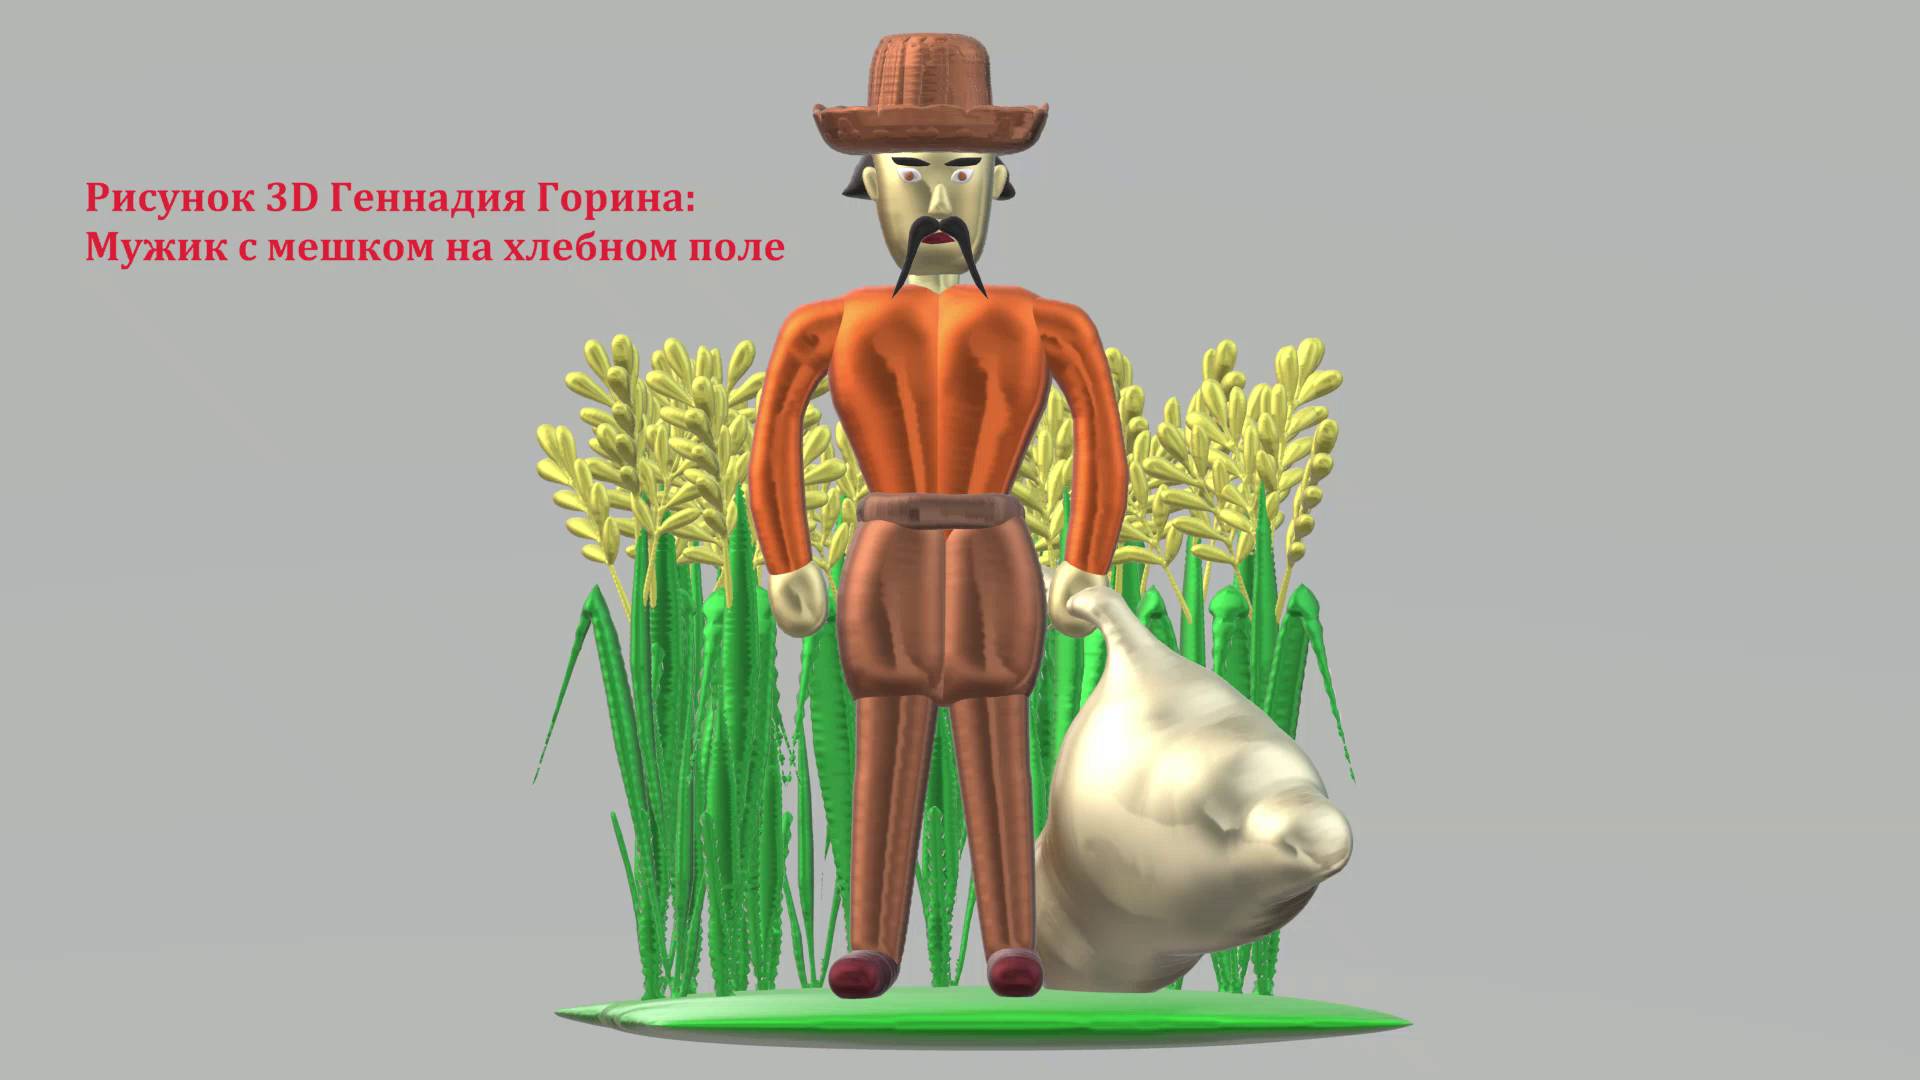 Рисунок 3D Геннадия Горина: Мужик с мешком на хлебном поле. Рисунки 3D